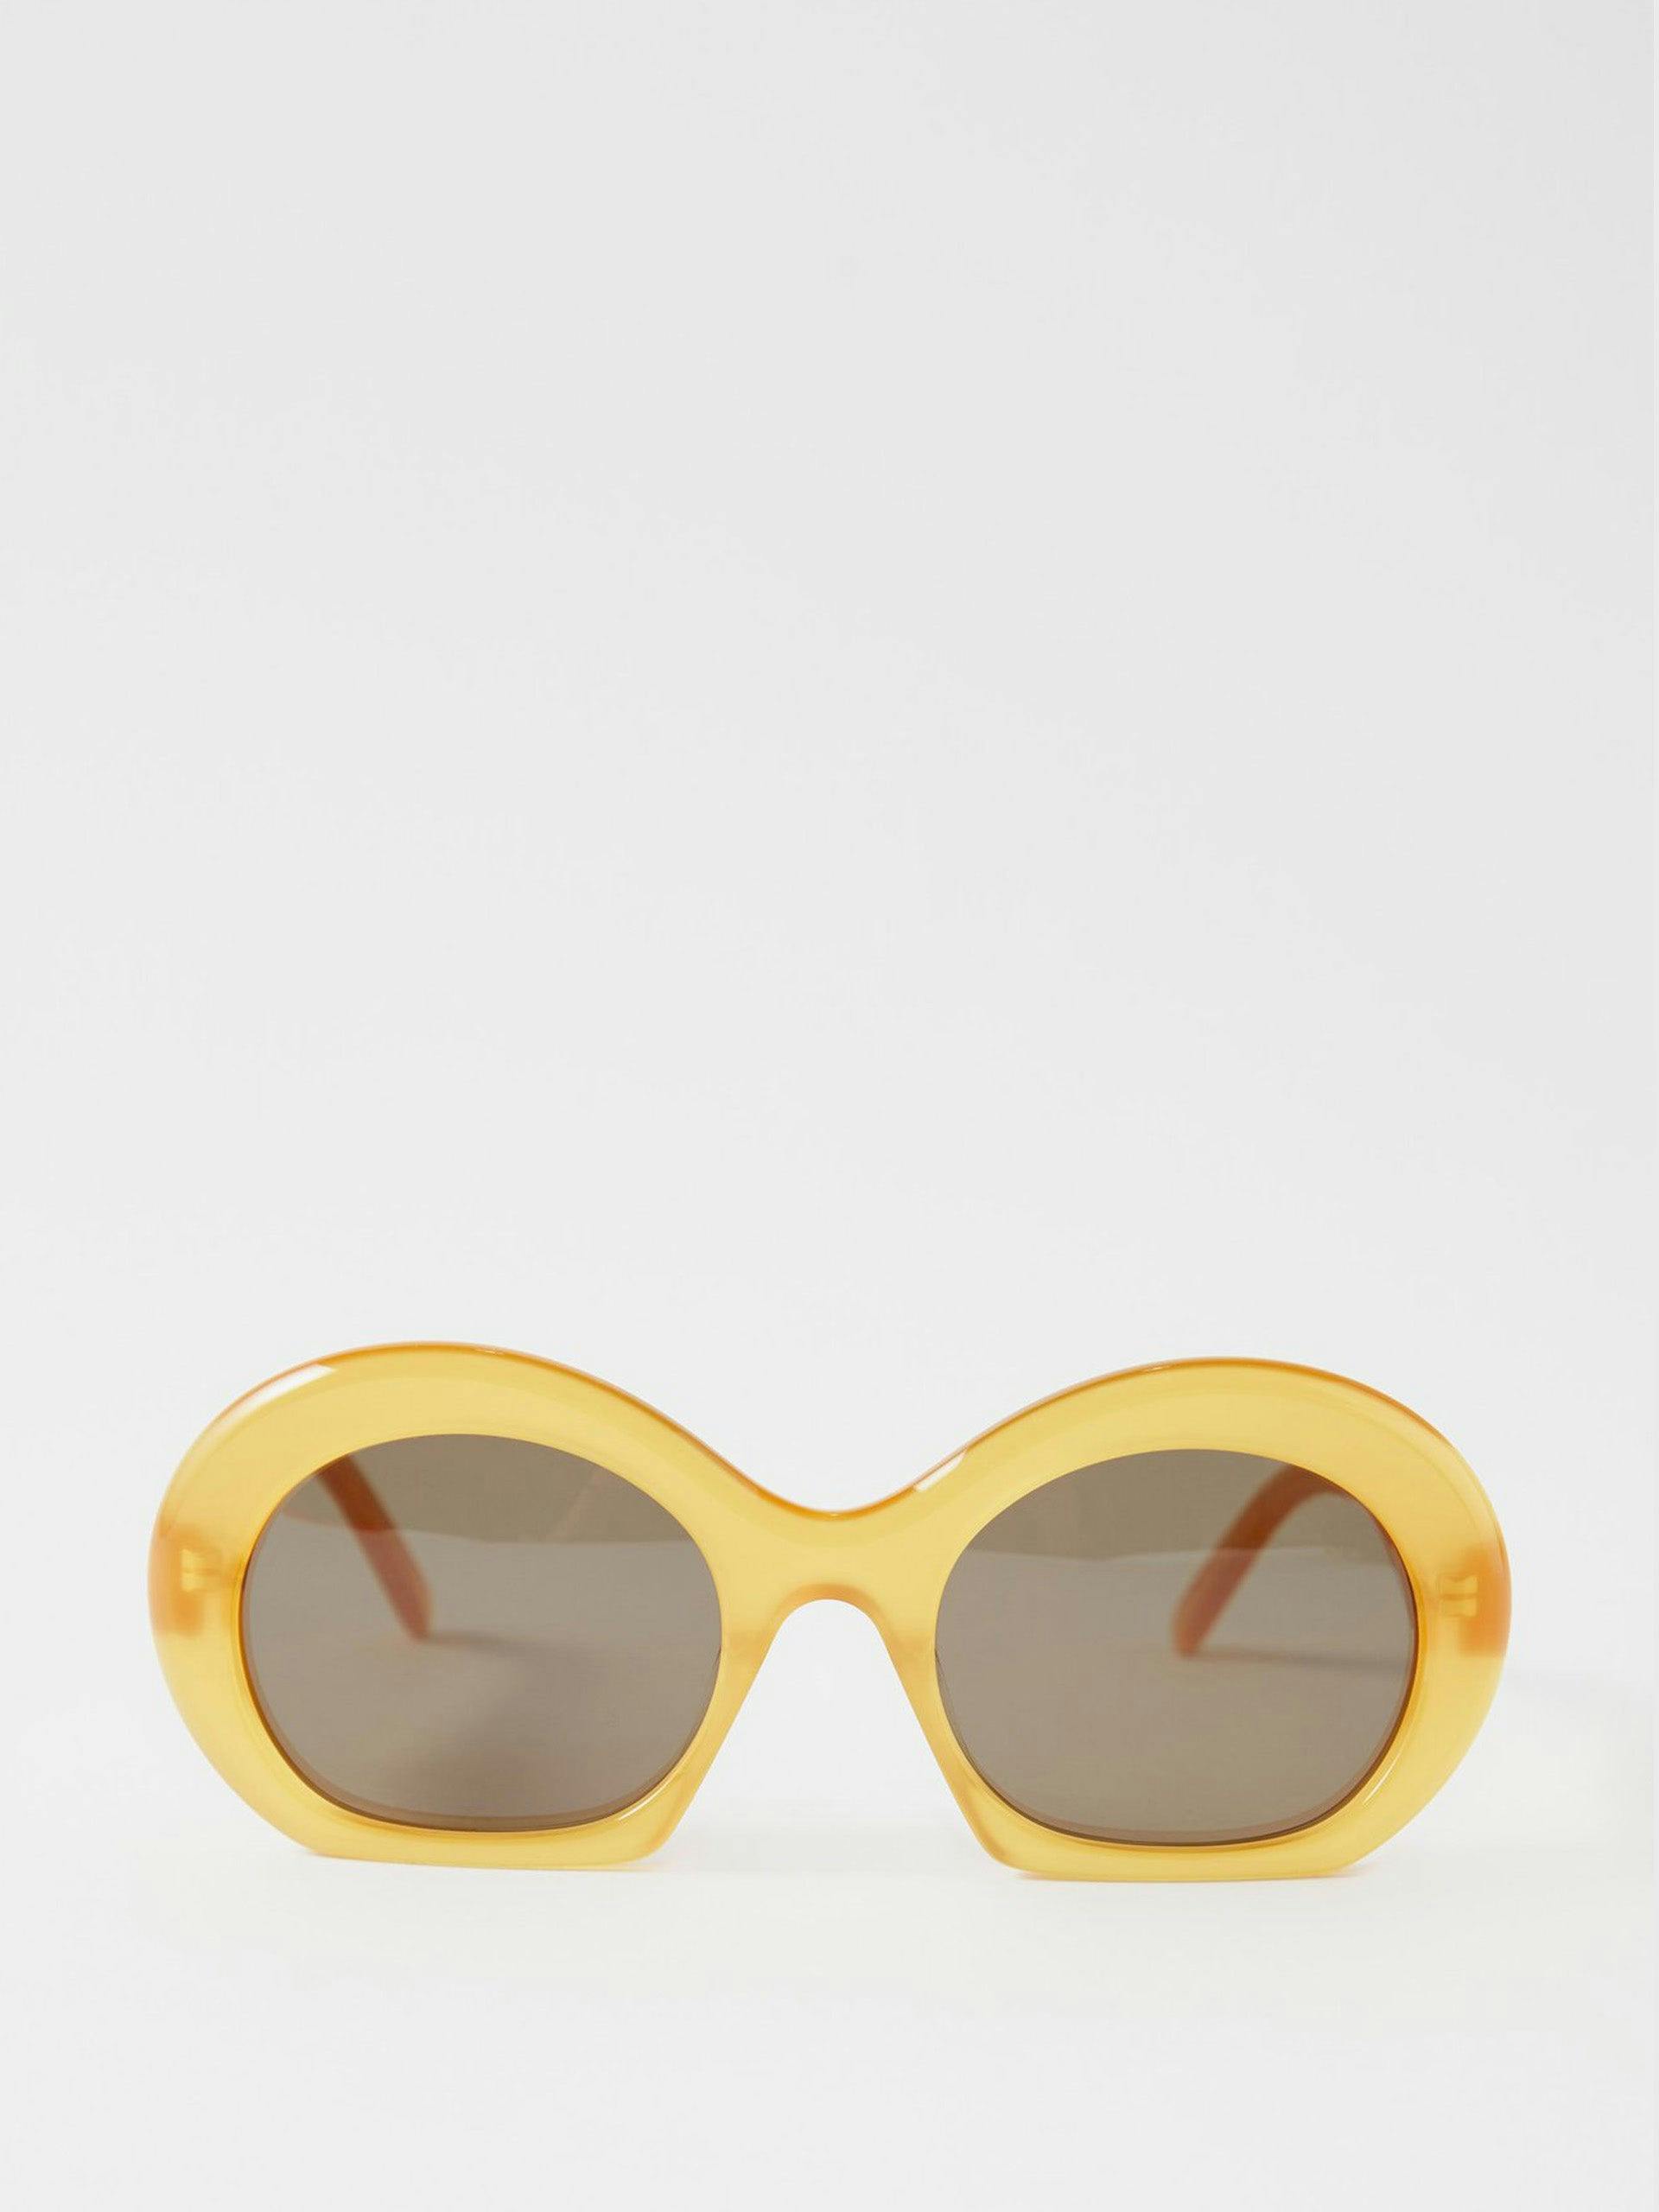 Half Moon oval acetate sunglasses